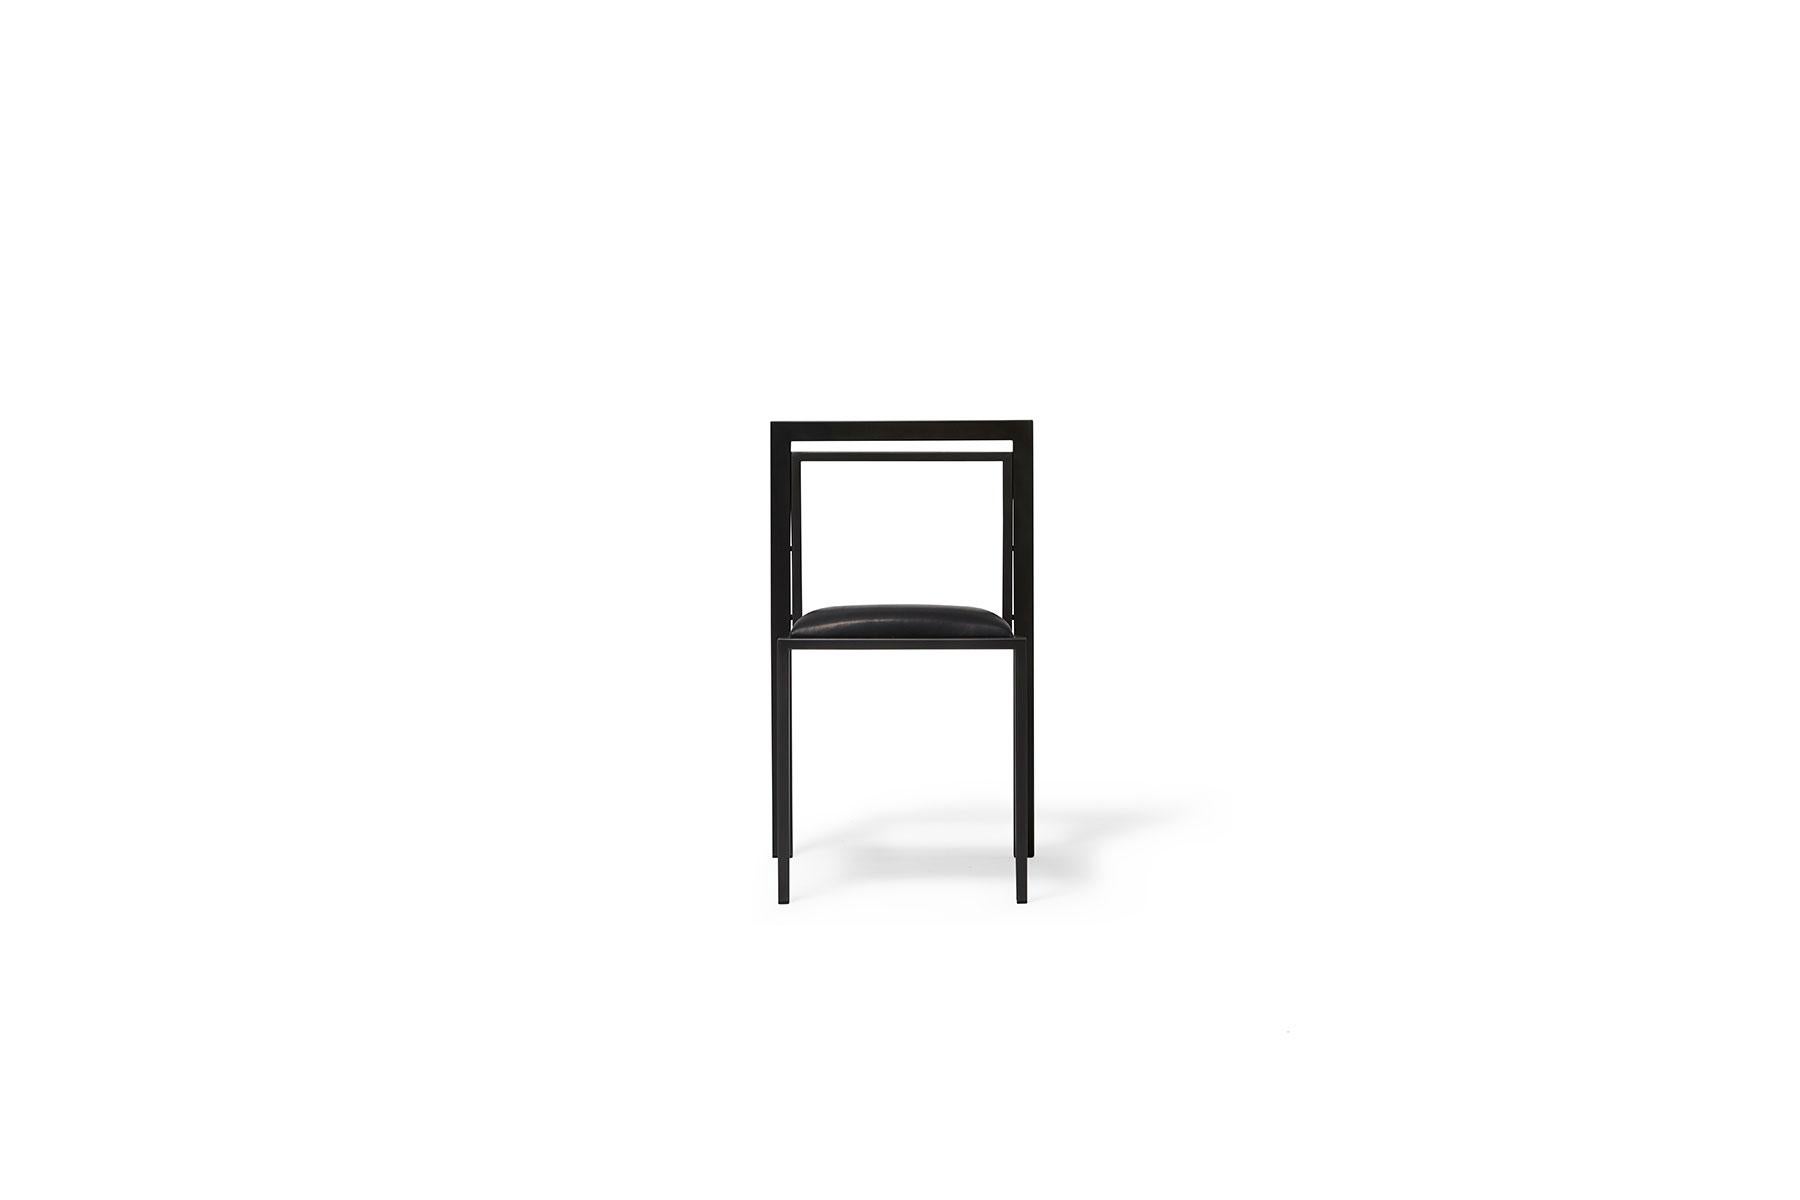 Ein Stahl- und Lederstuhl mit bequemem Sitz, der bei Bedarf platzsparend gestapelt werden kann. Diese tonale Version hat ein Gestell aus geschwärztem Stahl und einen mit schwarzem Leder gepolsterten Sitz. Einzelverkauf.

Jedes Stück von Stephen